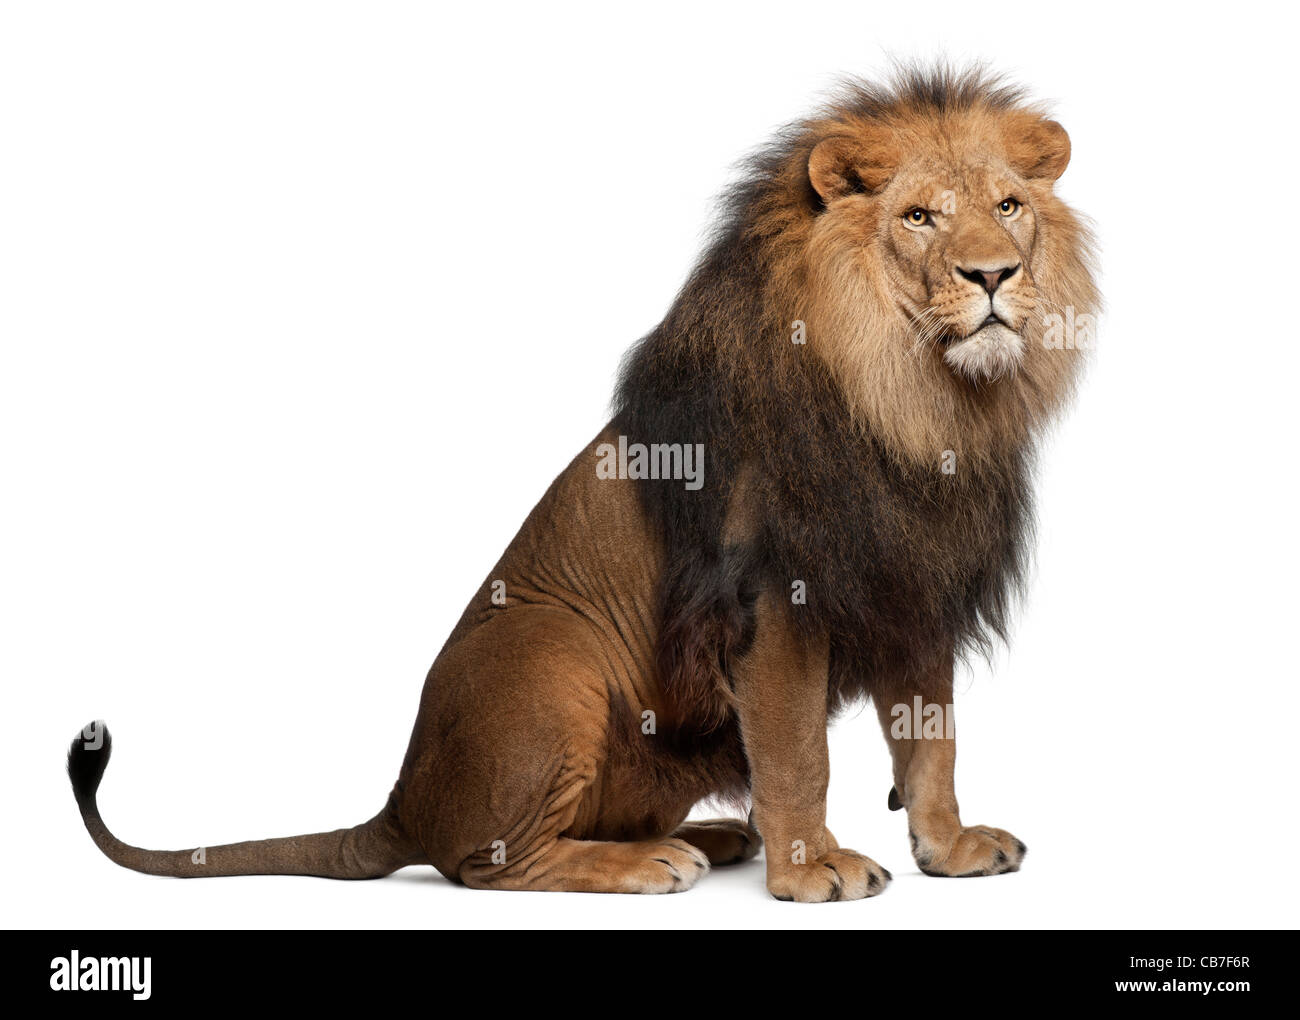 León, de 8 años, Panthera leo delante de un fondo blanco. Foto de stock